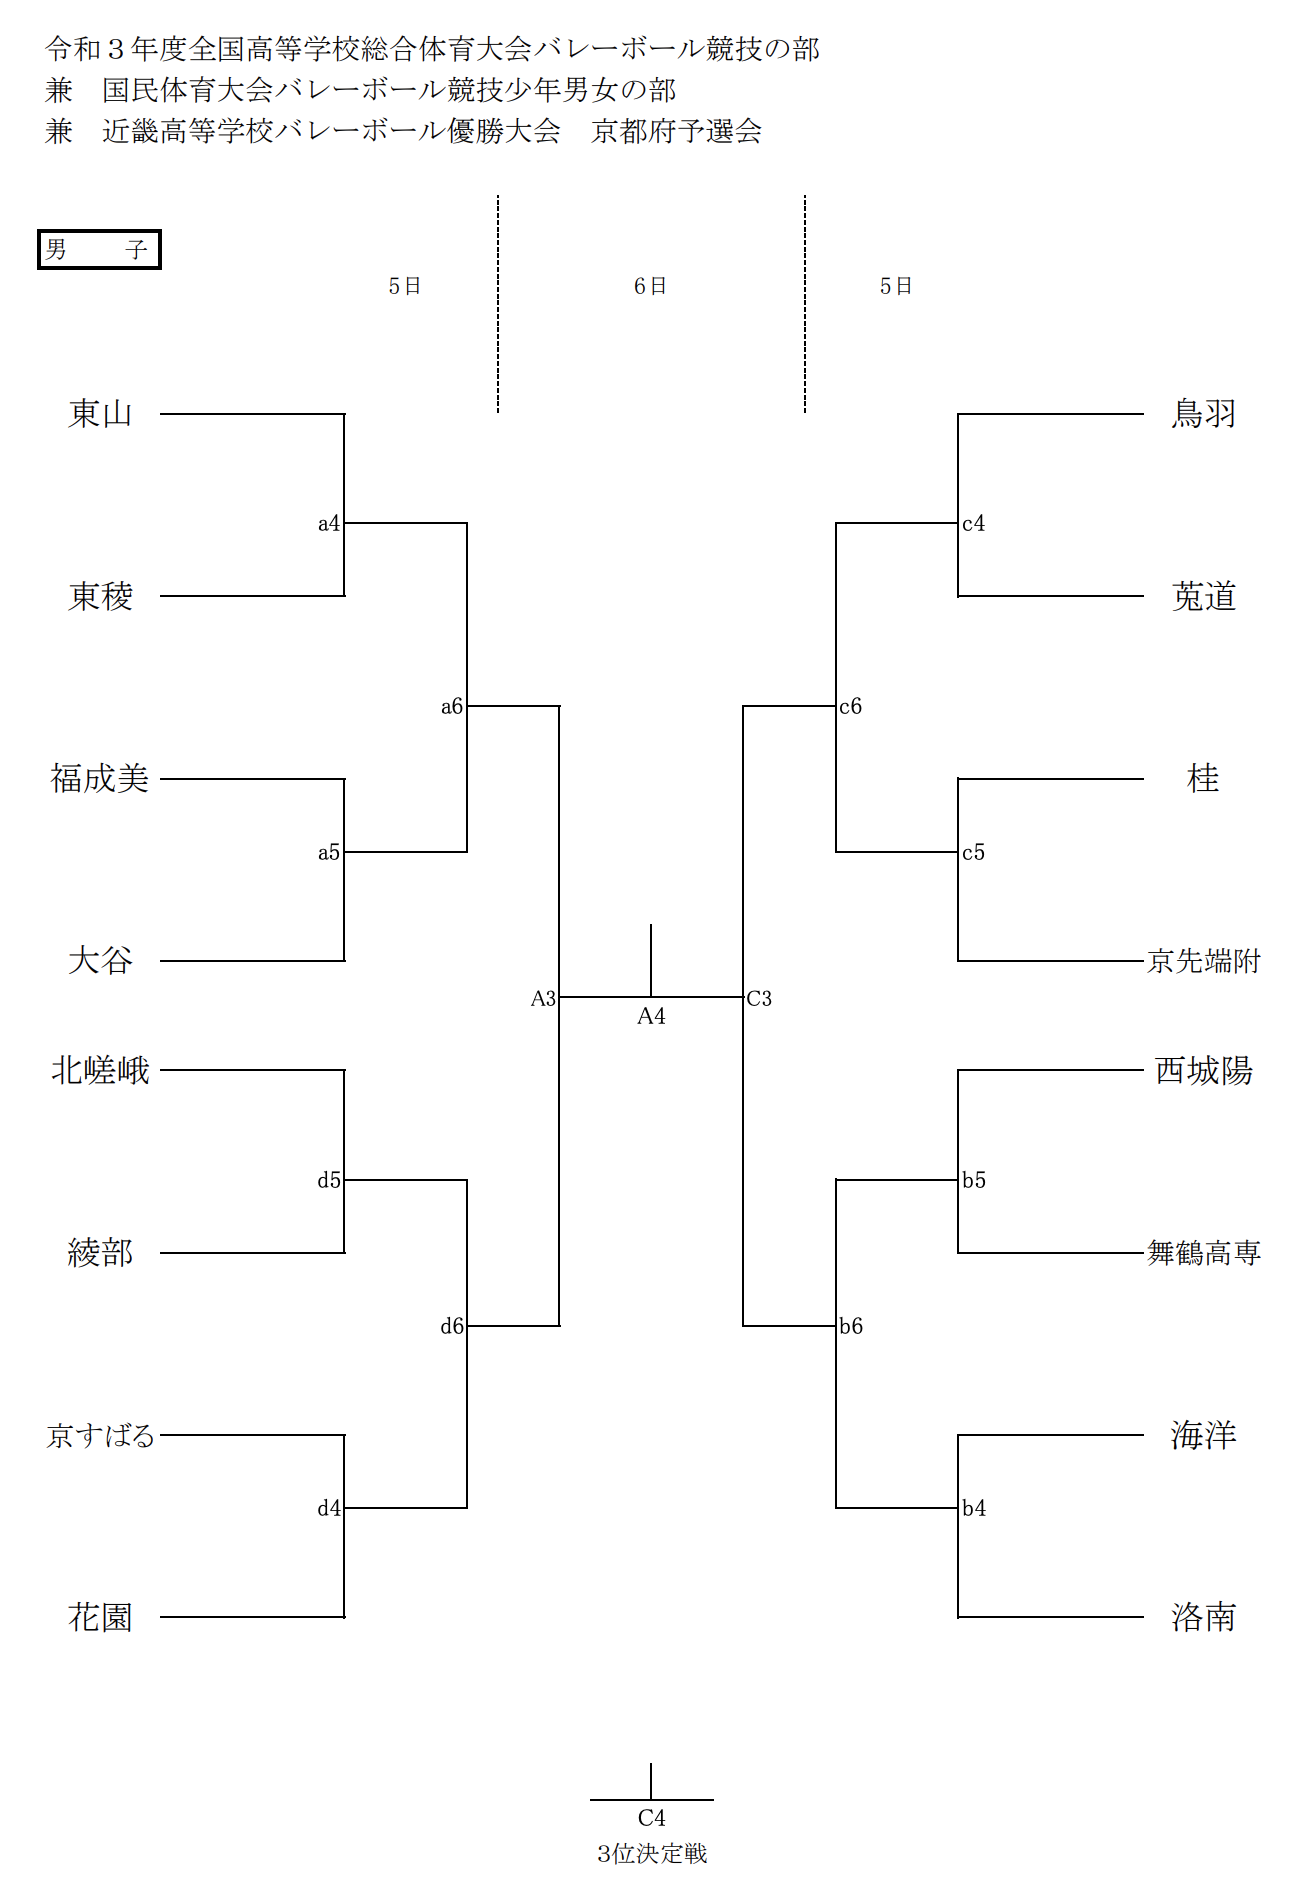 京都 21インターハイ 全国高等学校総合体育大会 バレーボール県予選 男子試合結果